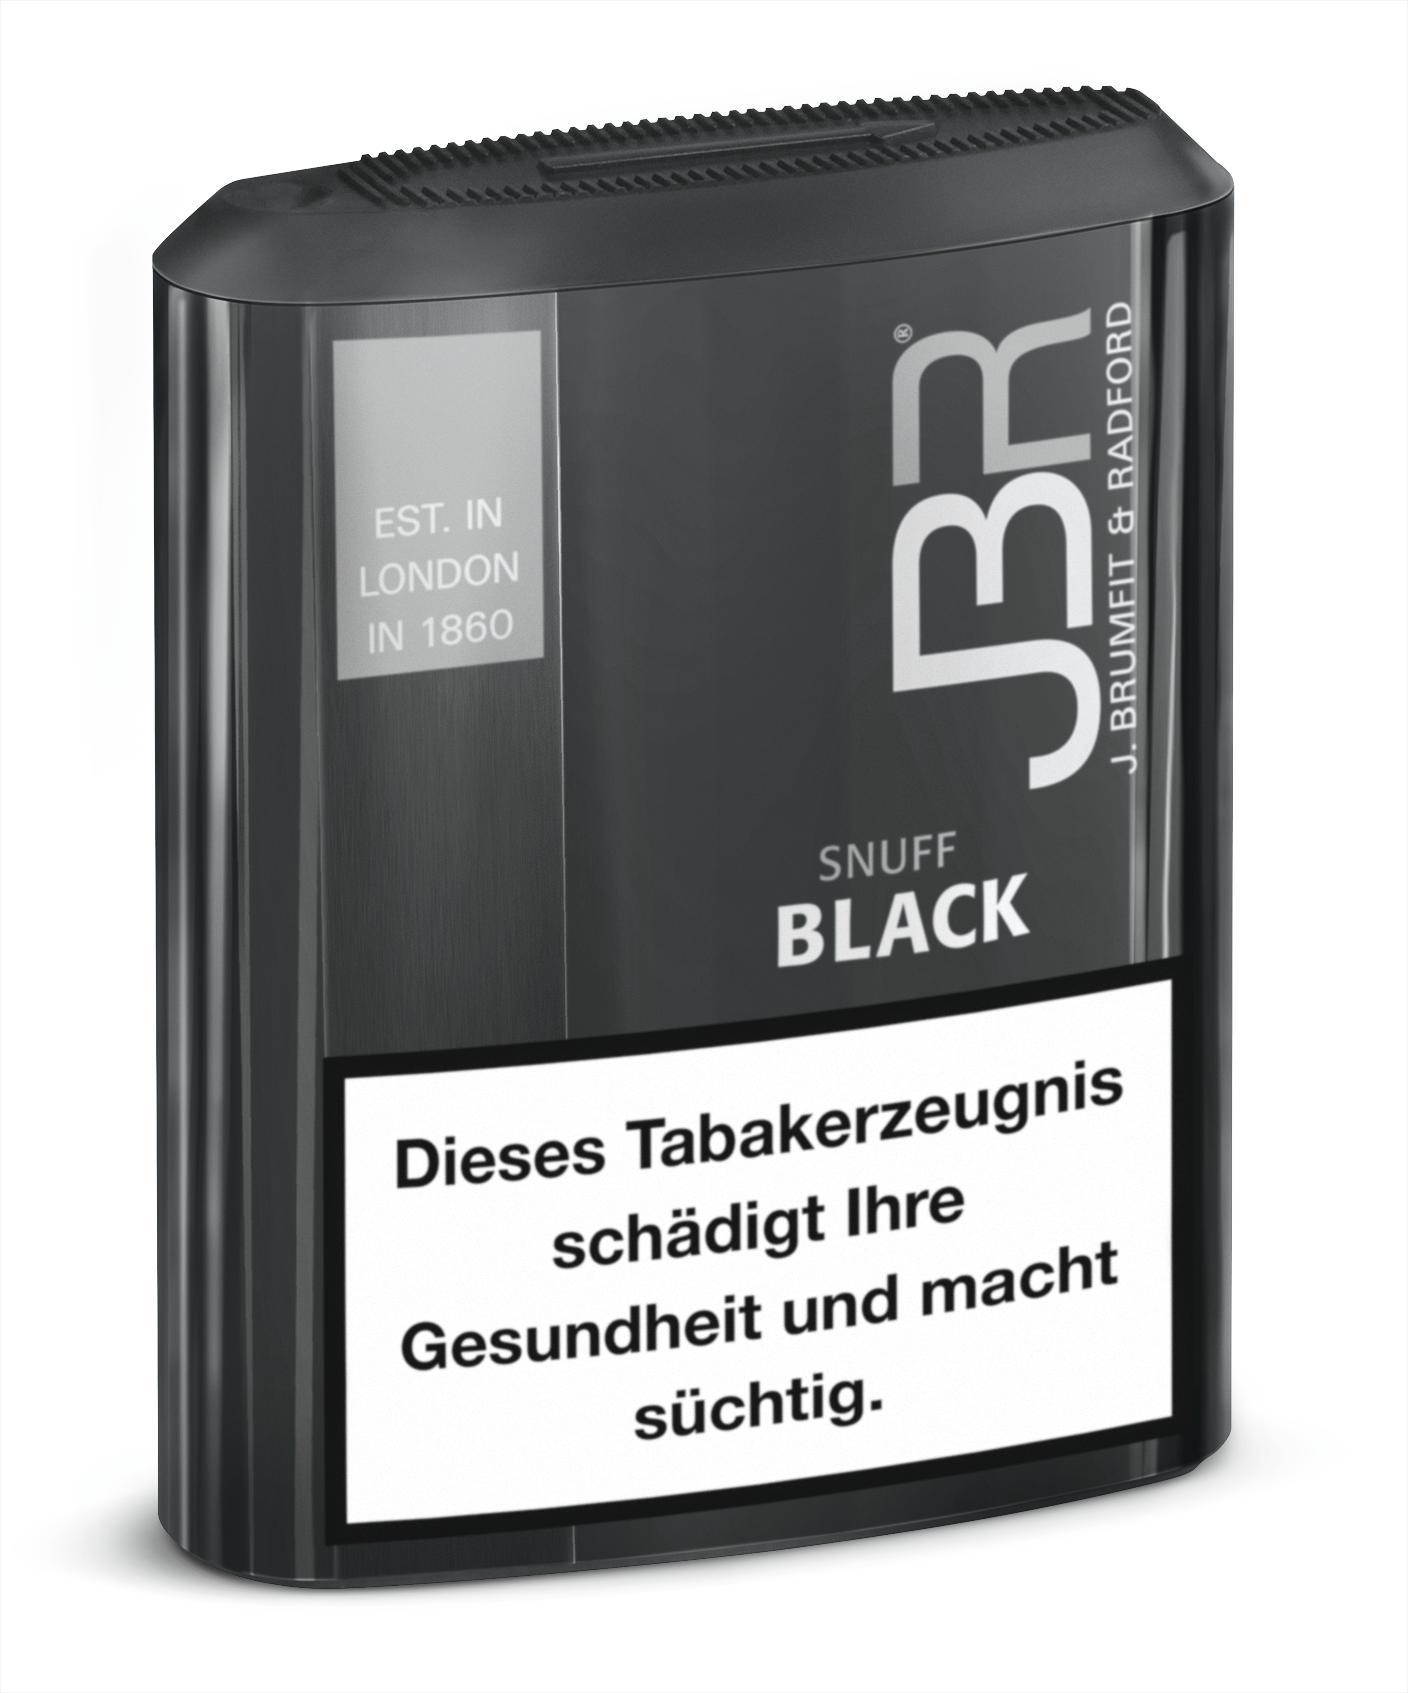 JBR Black Snuff 10 x 10g Dosen